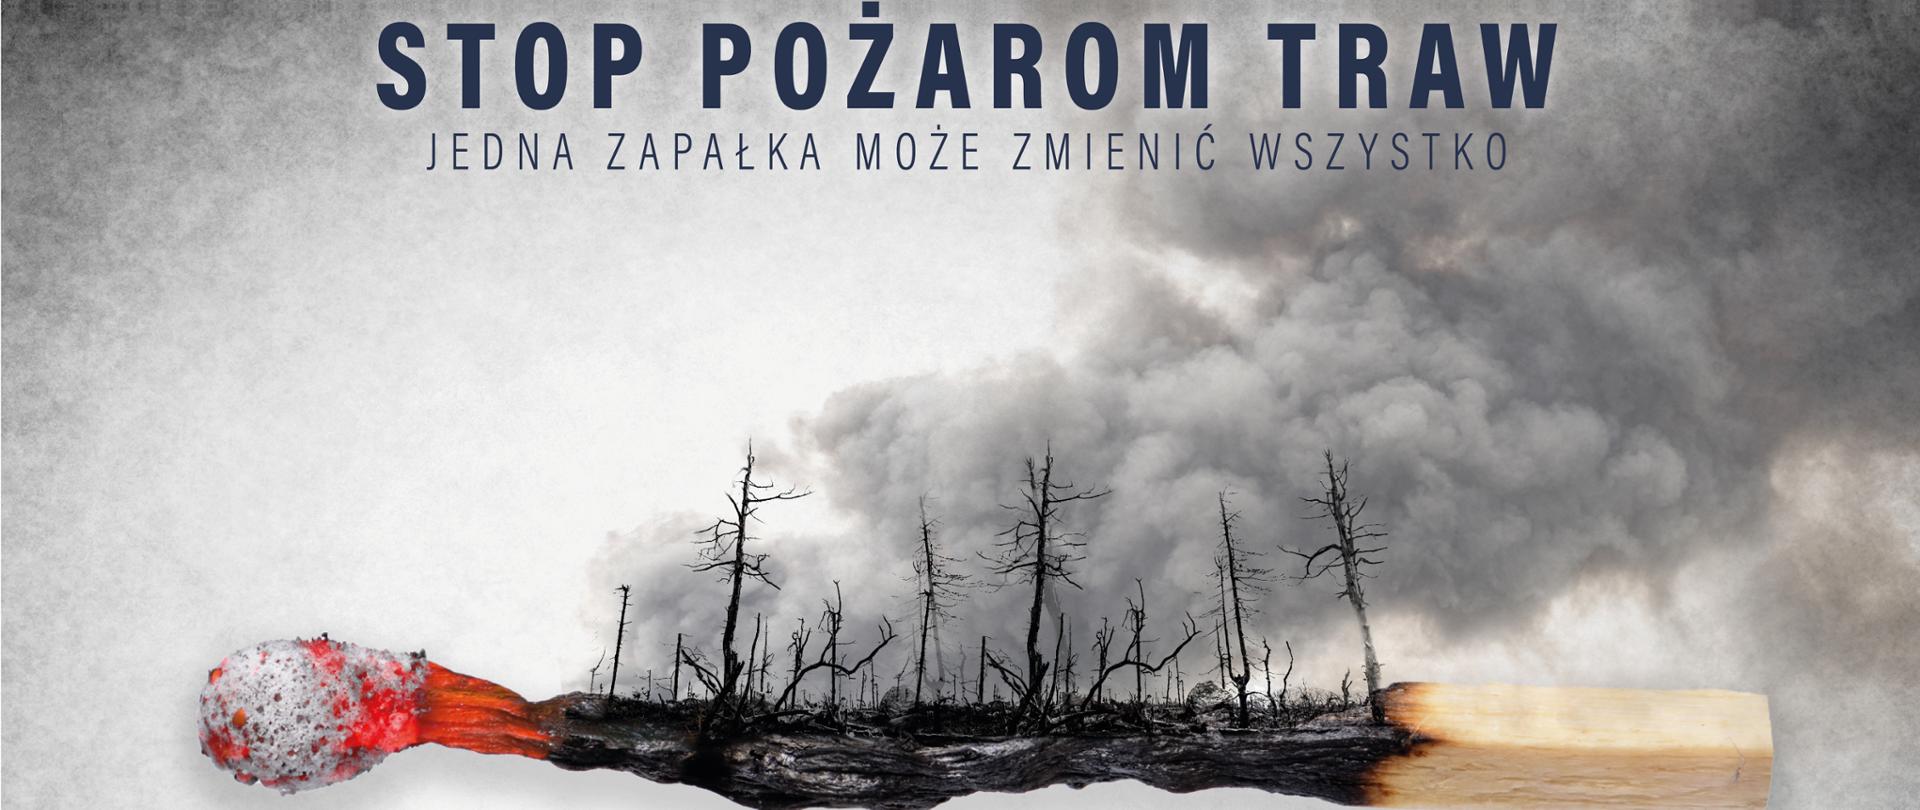 Infografika przedstawiająca spalony las oraz wypaloną zapałkę z napisem "STOP POŻAROM TRAW, JEDNA ZAPAŁKA MOŻE ZMIENIĆ WSZYSTKO"